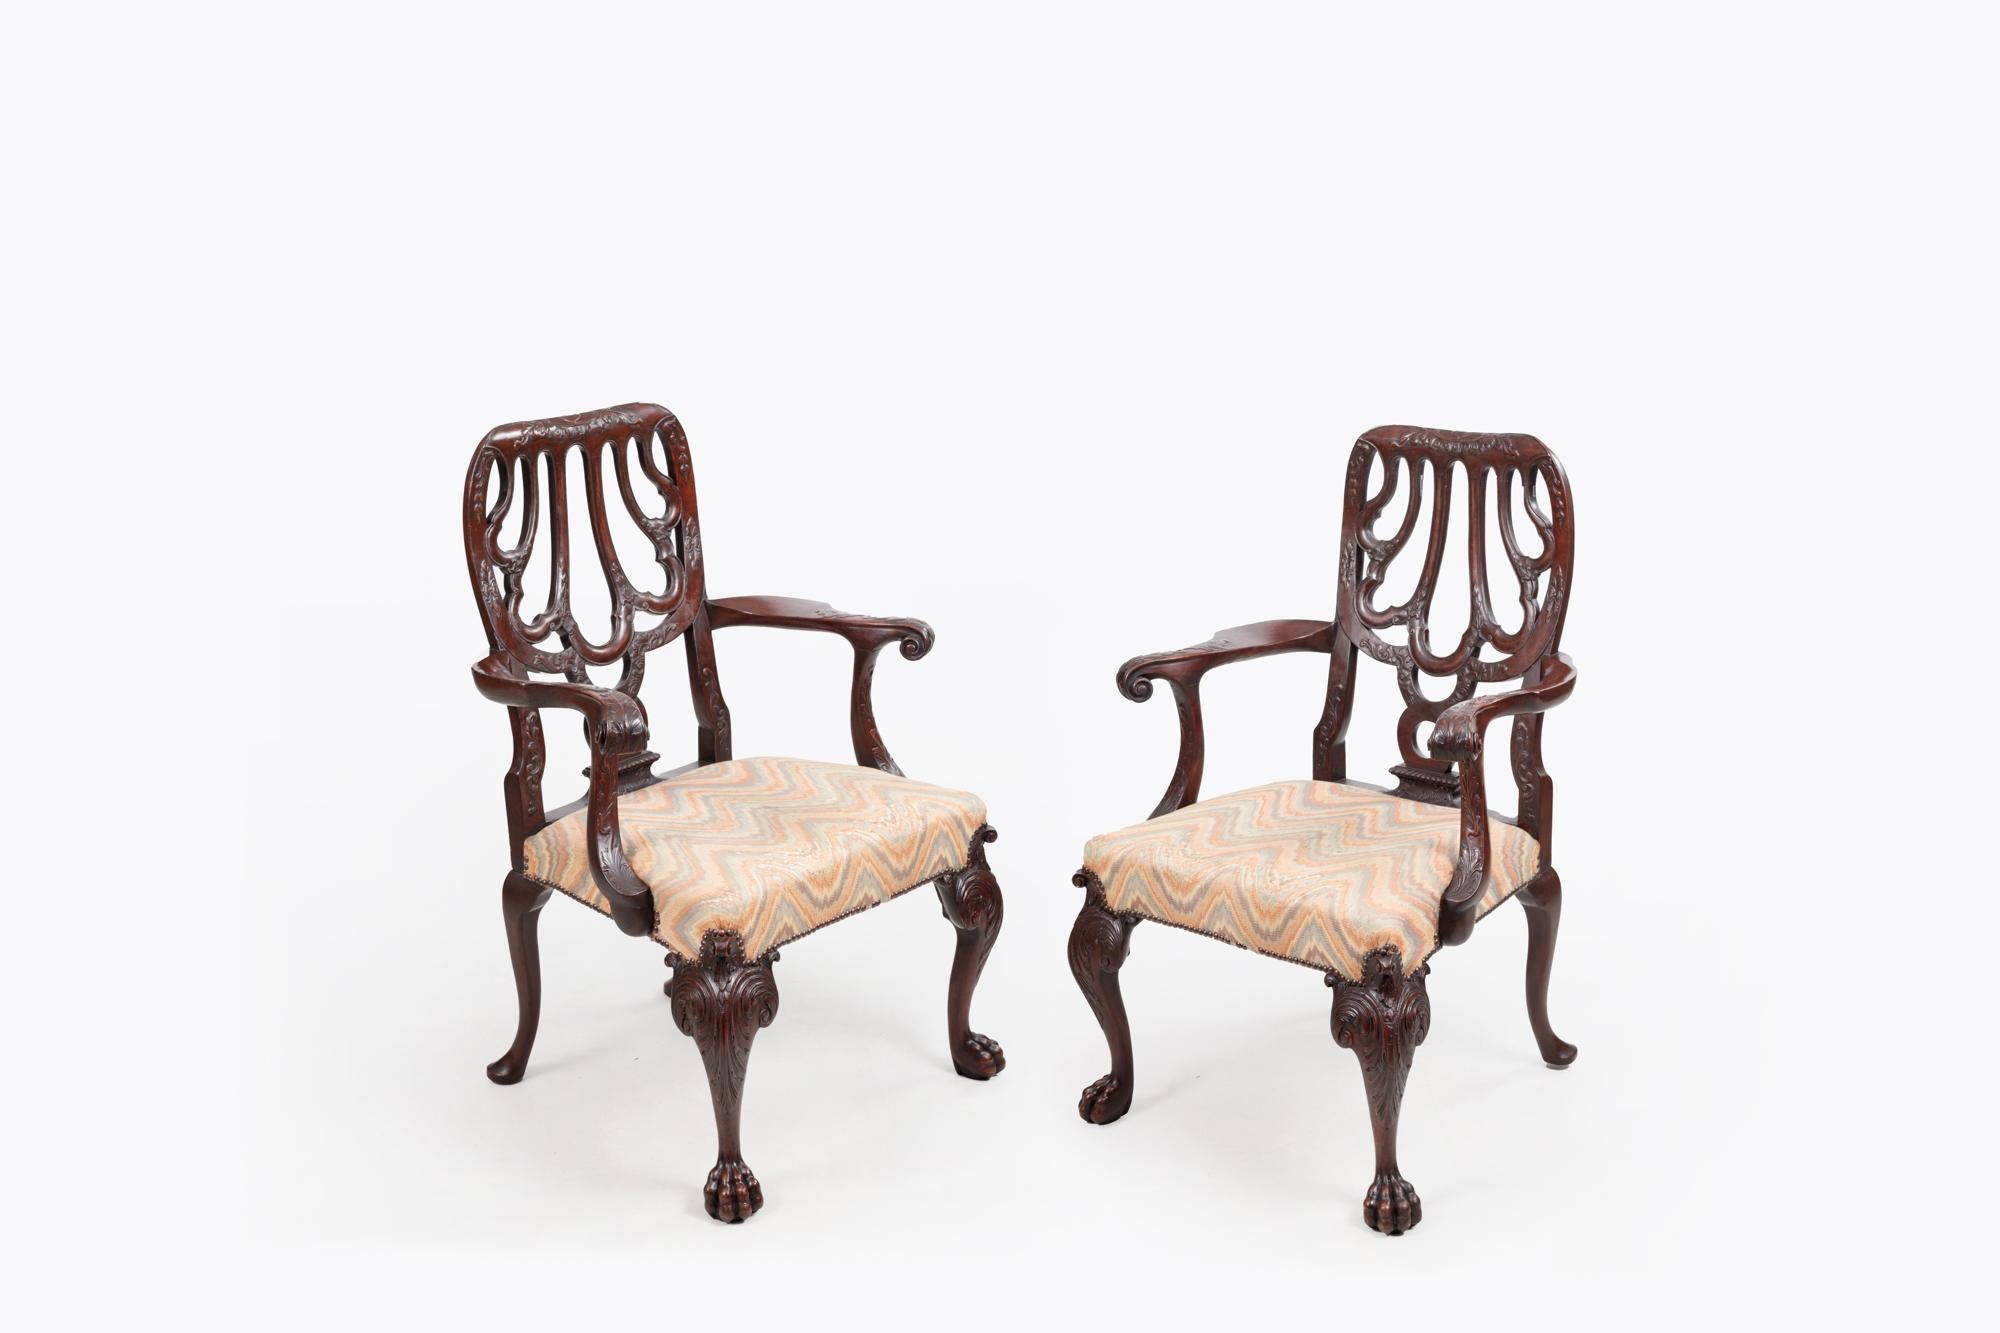 Paar Sessel nach Giles Grendey aus dem 18. Jahrhundert mit durchbrochener Rückenlehne, stilisiertem Muschelmotiv und geschwungenen Armlehnen mit Reliefschnitzereien. Die gepolsterten Sitze ruhen auf geschnitzten Cabriole-Beinen mit Schnecken- und